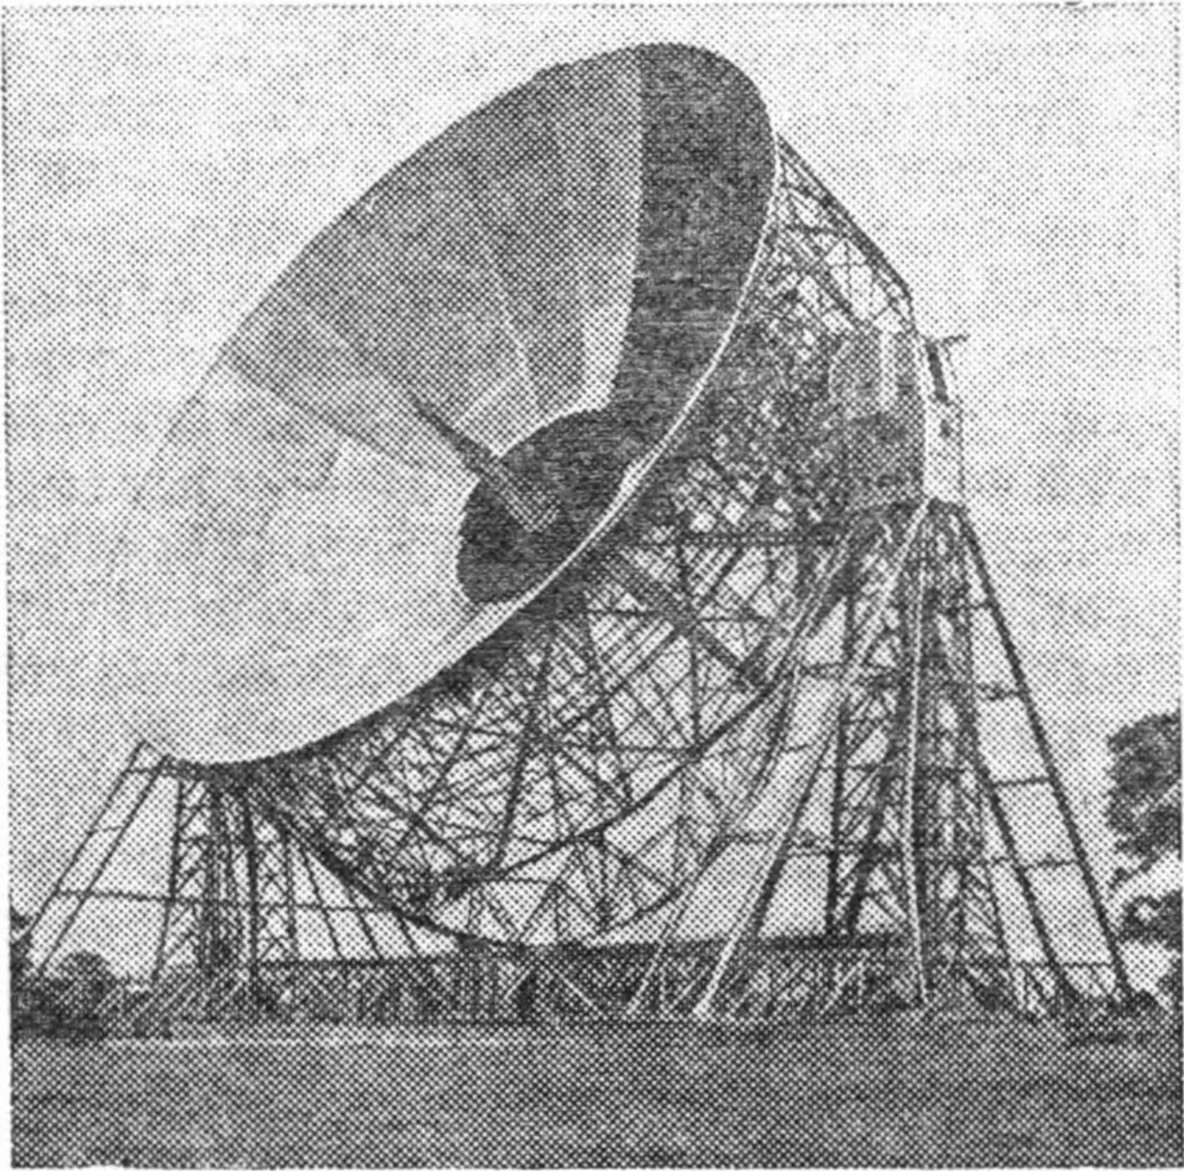 Рис. 20. Радиотелескоп обсерватории Джодрелл Бэнк (Англия) диаметром 76 м